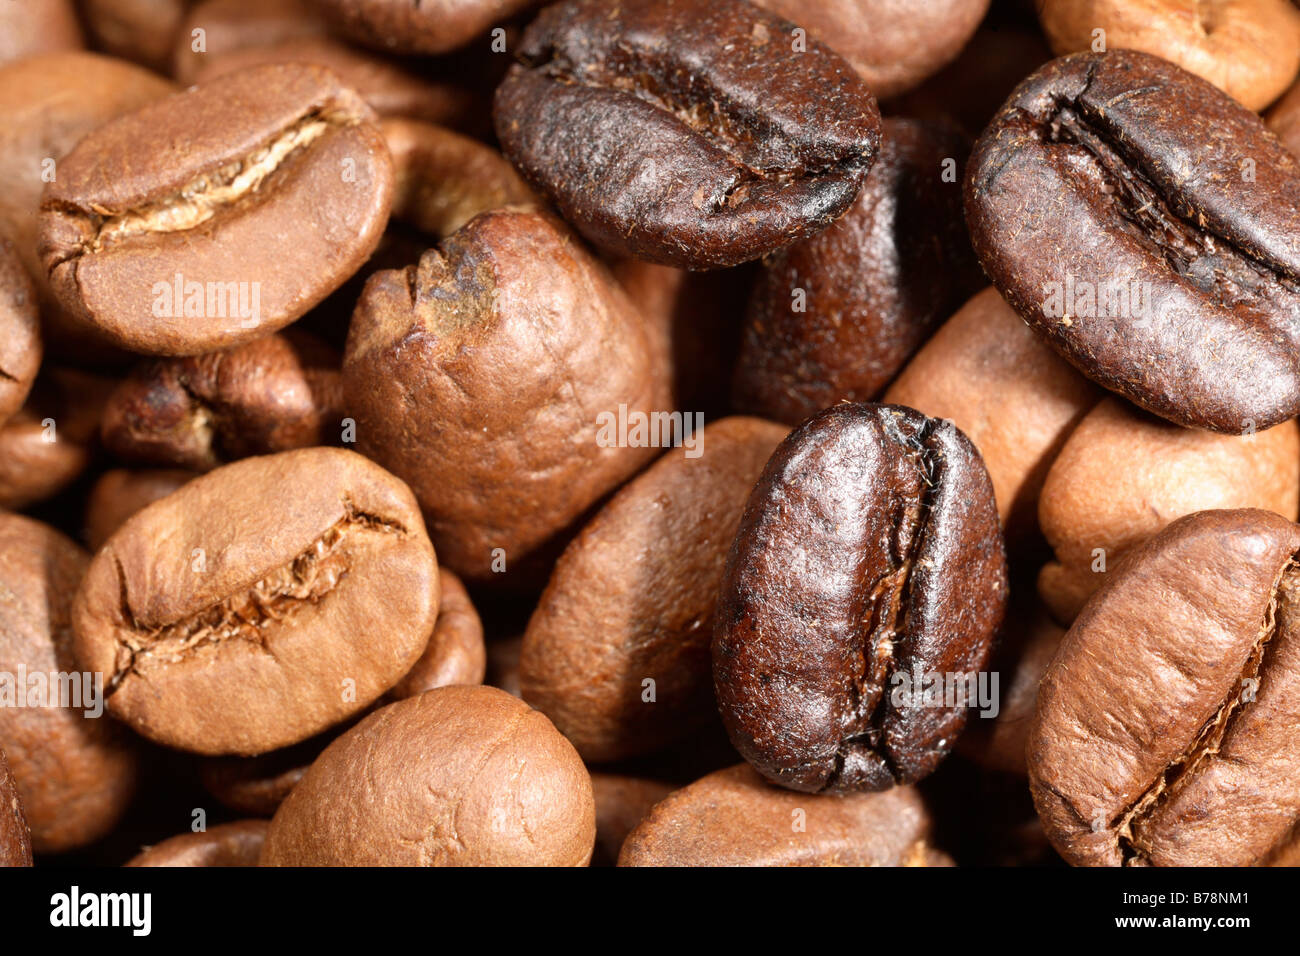 Eine Mischung aus gerösteten brasilianischen Kaffeebohnen, etwas Licht etwas dunkel, ein mittelstarkes Kaffeezubereitung. Extreme Vergrößerung Stockfoto